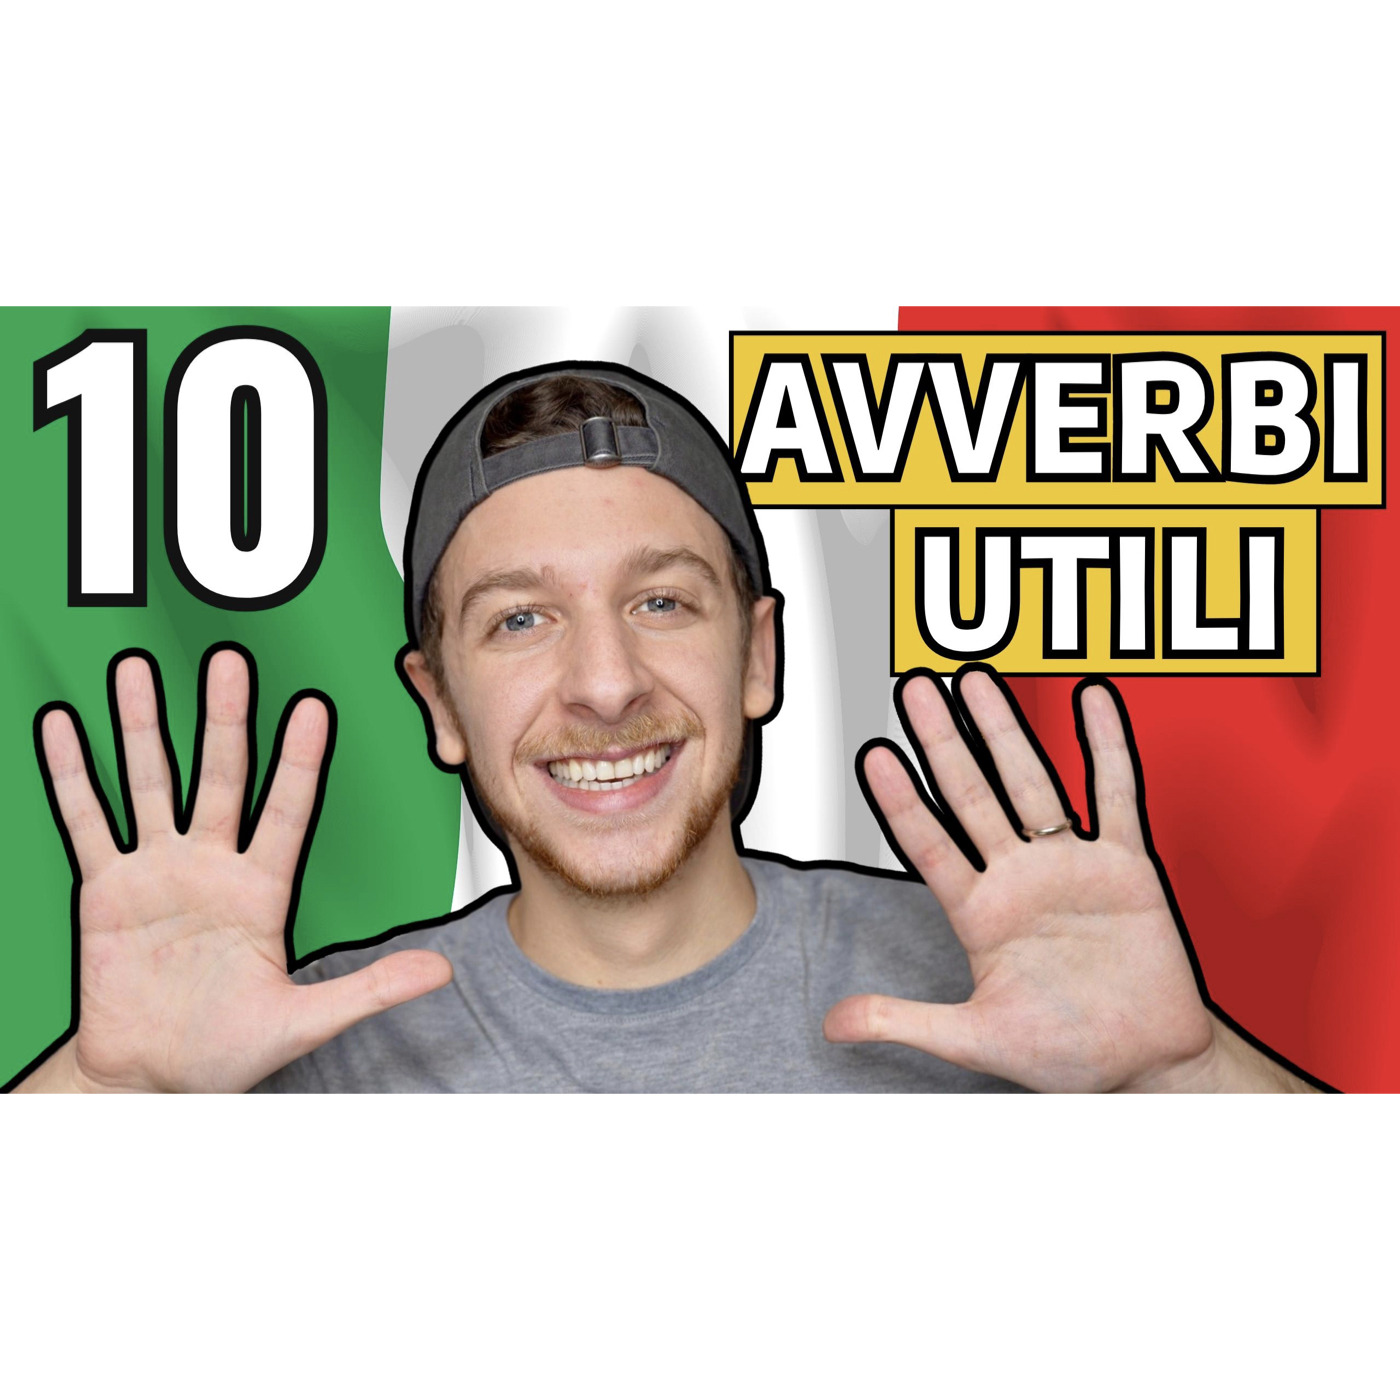 Episode 571: 10 Avverbi Utili Per Parlare Come Un Vero Nativo | Imparare l’Italiano